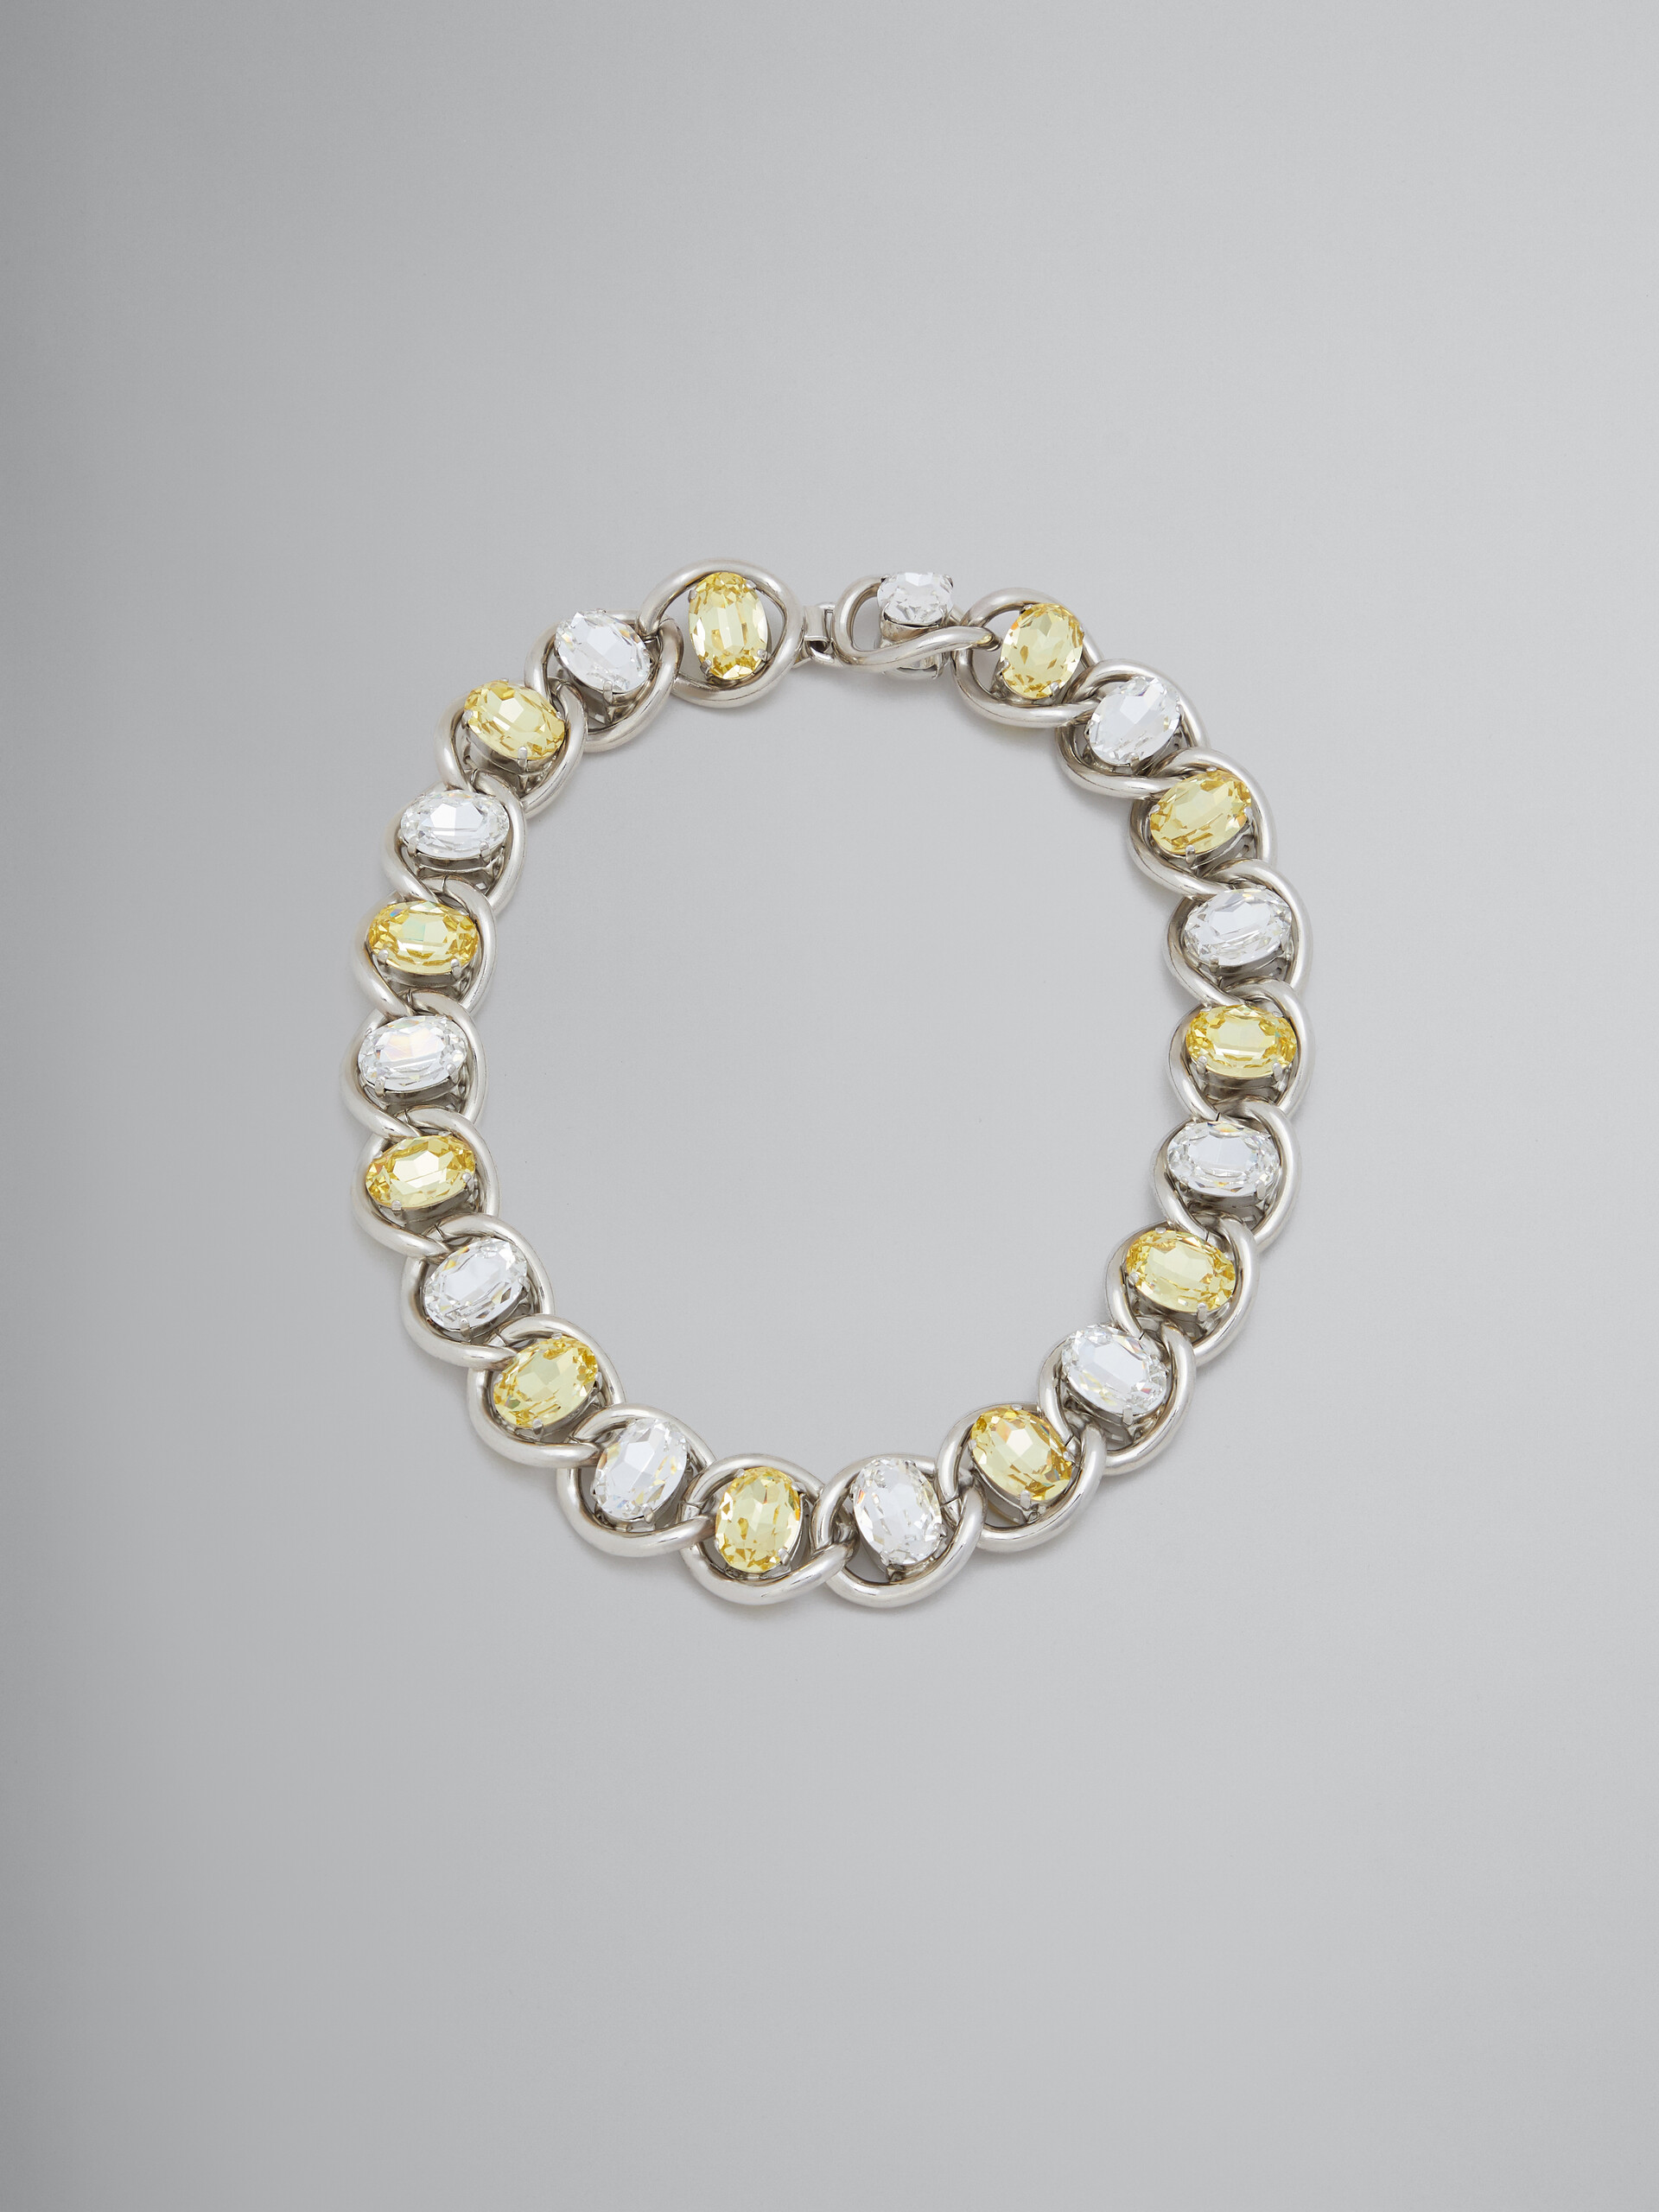 Halskette in Transparent und Gelb mit Strass - Halsketten - Image 1